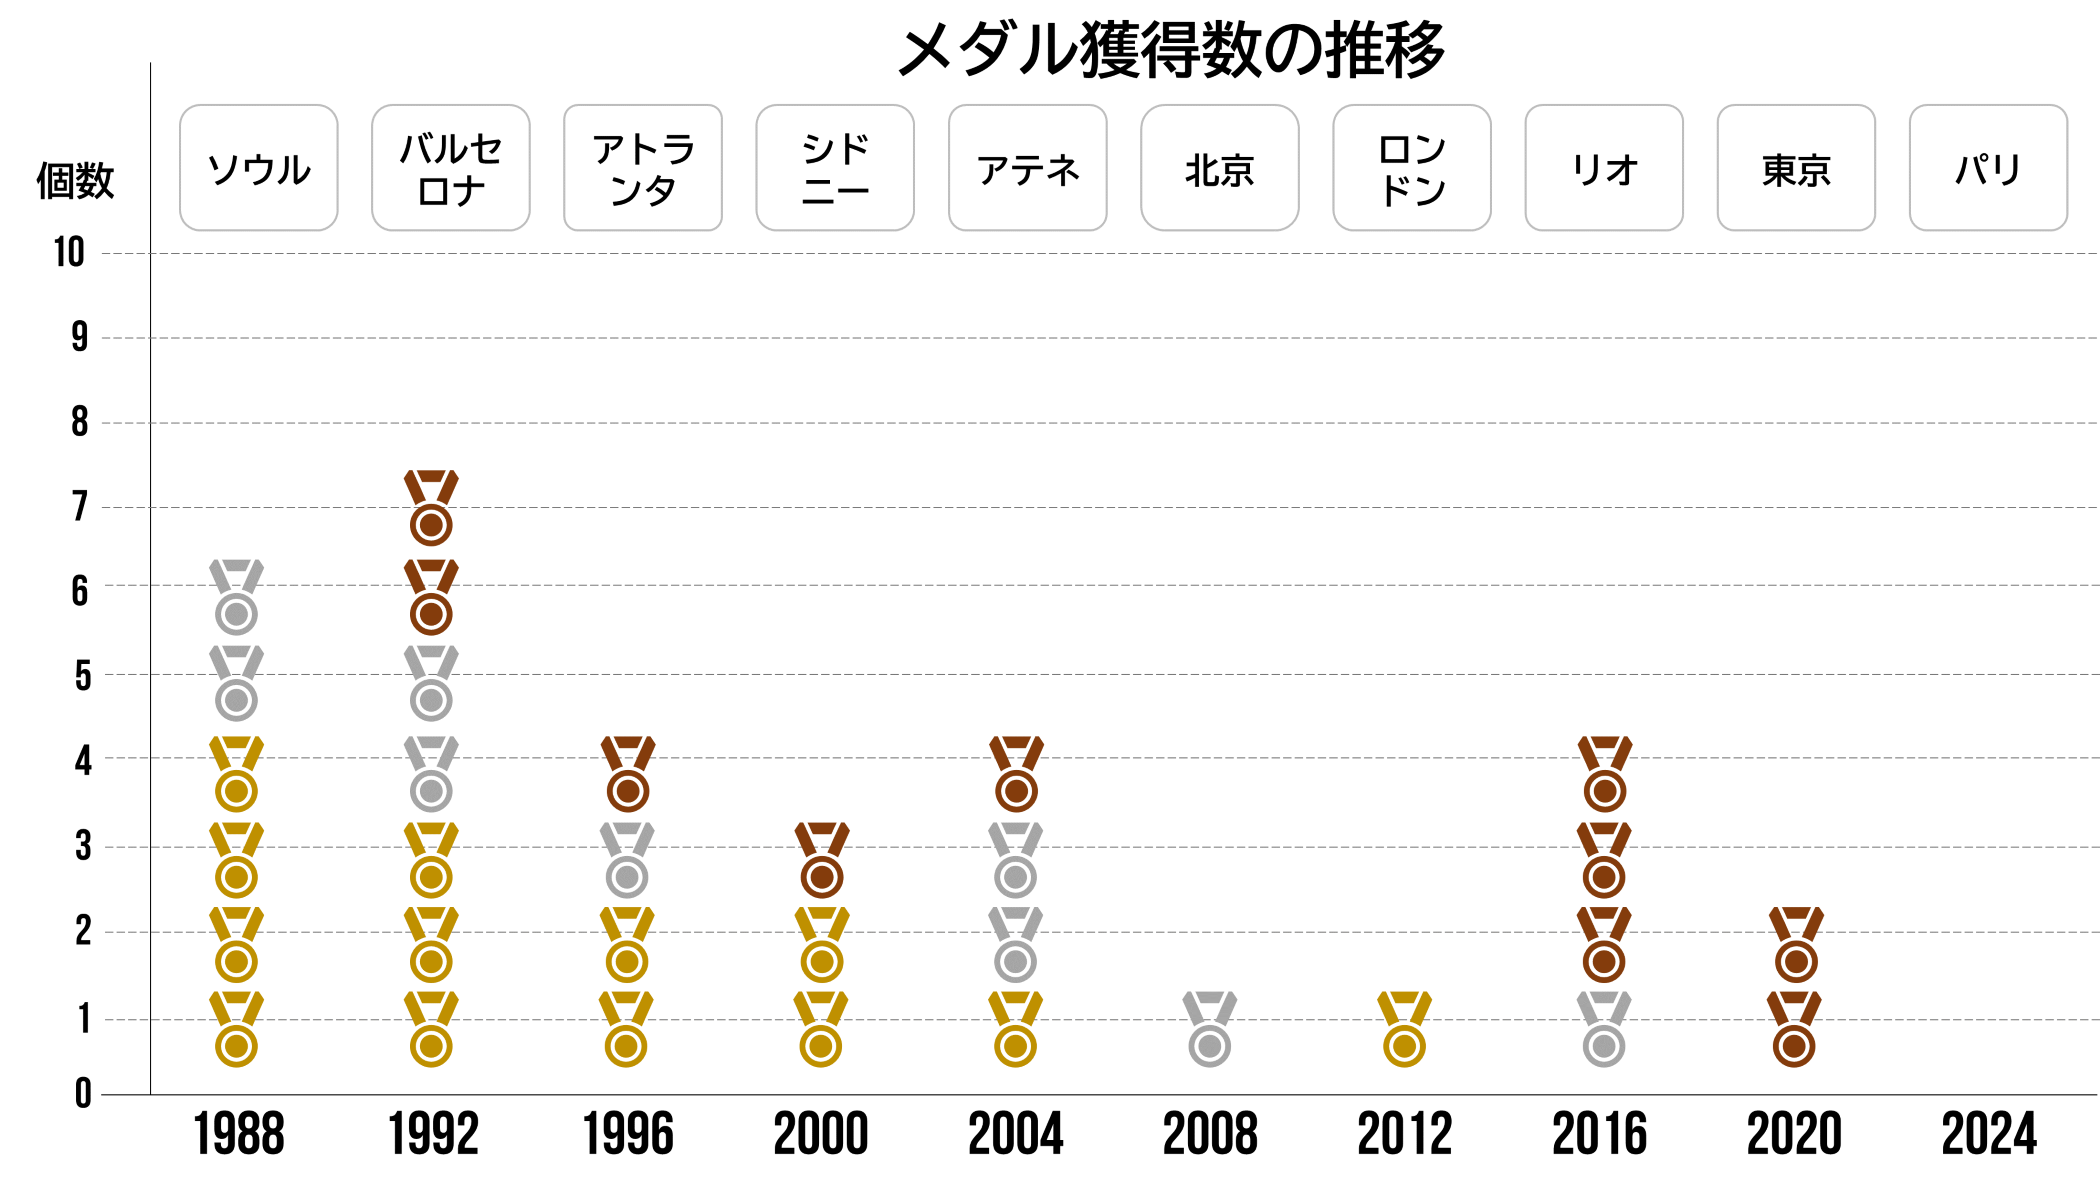 1988年ソウル大会で金メダル4個、銀メダルを2個獲得。1992年が最多数で金メダル3個、銀メダル2個、銅メダル2個。2012年金メダル1個獲得が最後で、以降金メダルが獲得できず、2020東京大会は銅メダル2個を獲得。